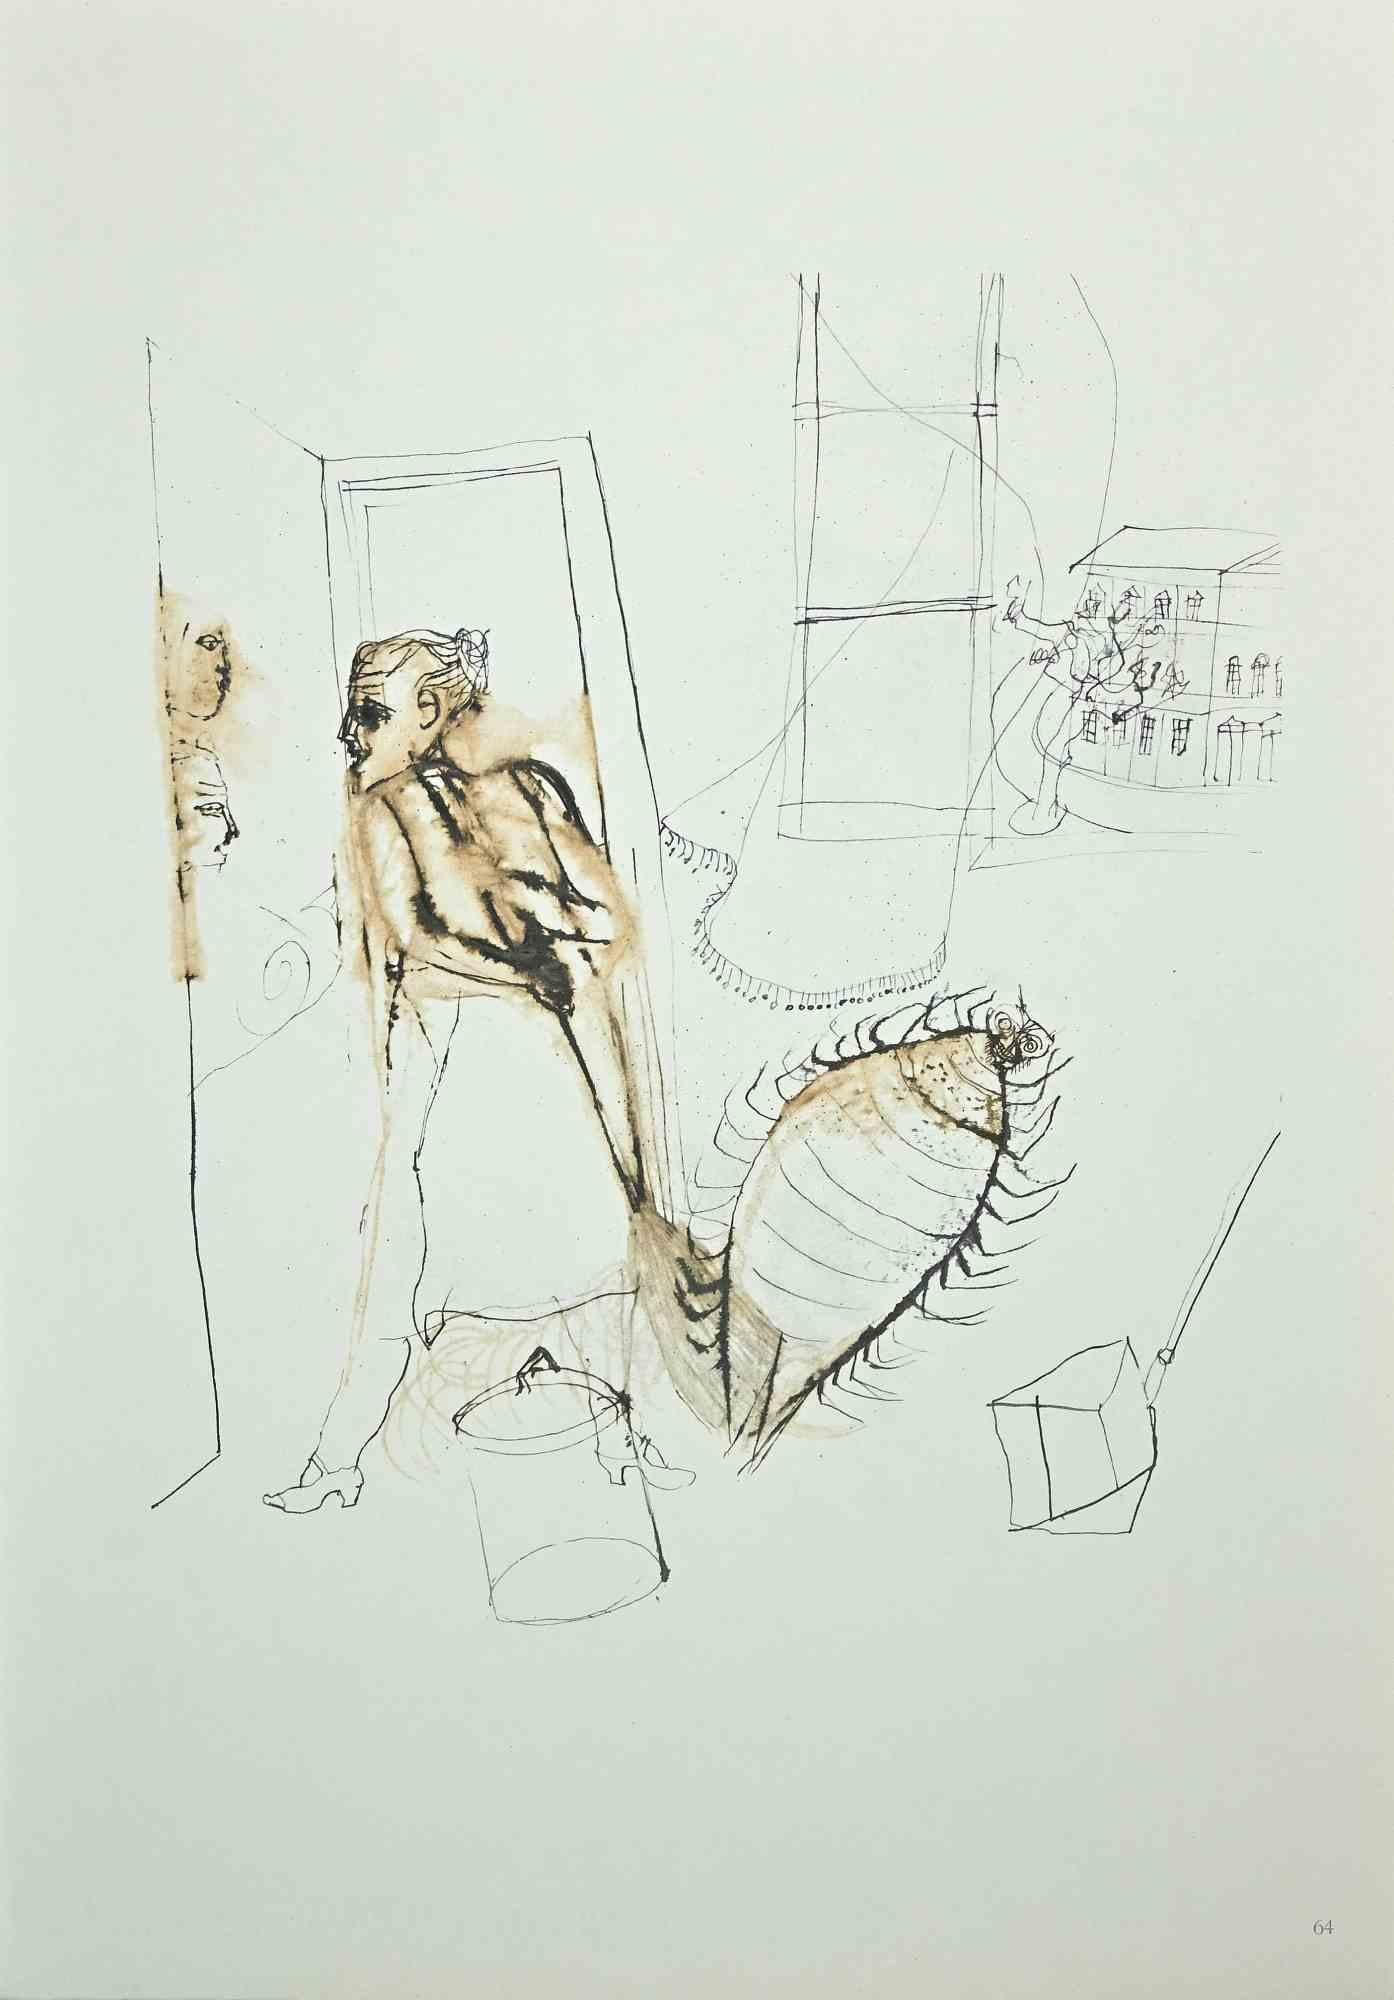 Die Frau und der Käfer ist ein Original-Offsetdruck auf elfenbeinfarbenem Papier, realisiert von  Franco Gentilini (italienischer Maler, 1909-1981), in den 1970er Jahren.

Der Erhaltungszustand der Kunstwerke ist ausgezeichnet.

Franco Gentilini